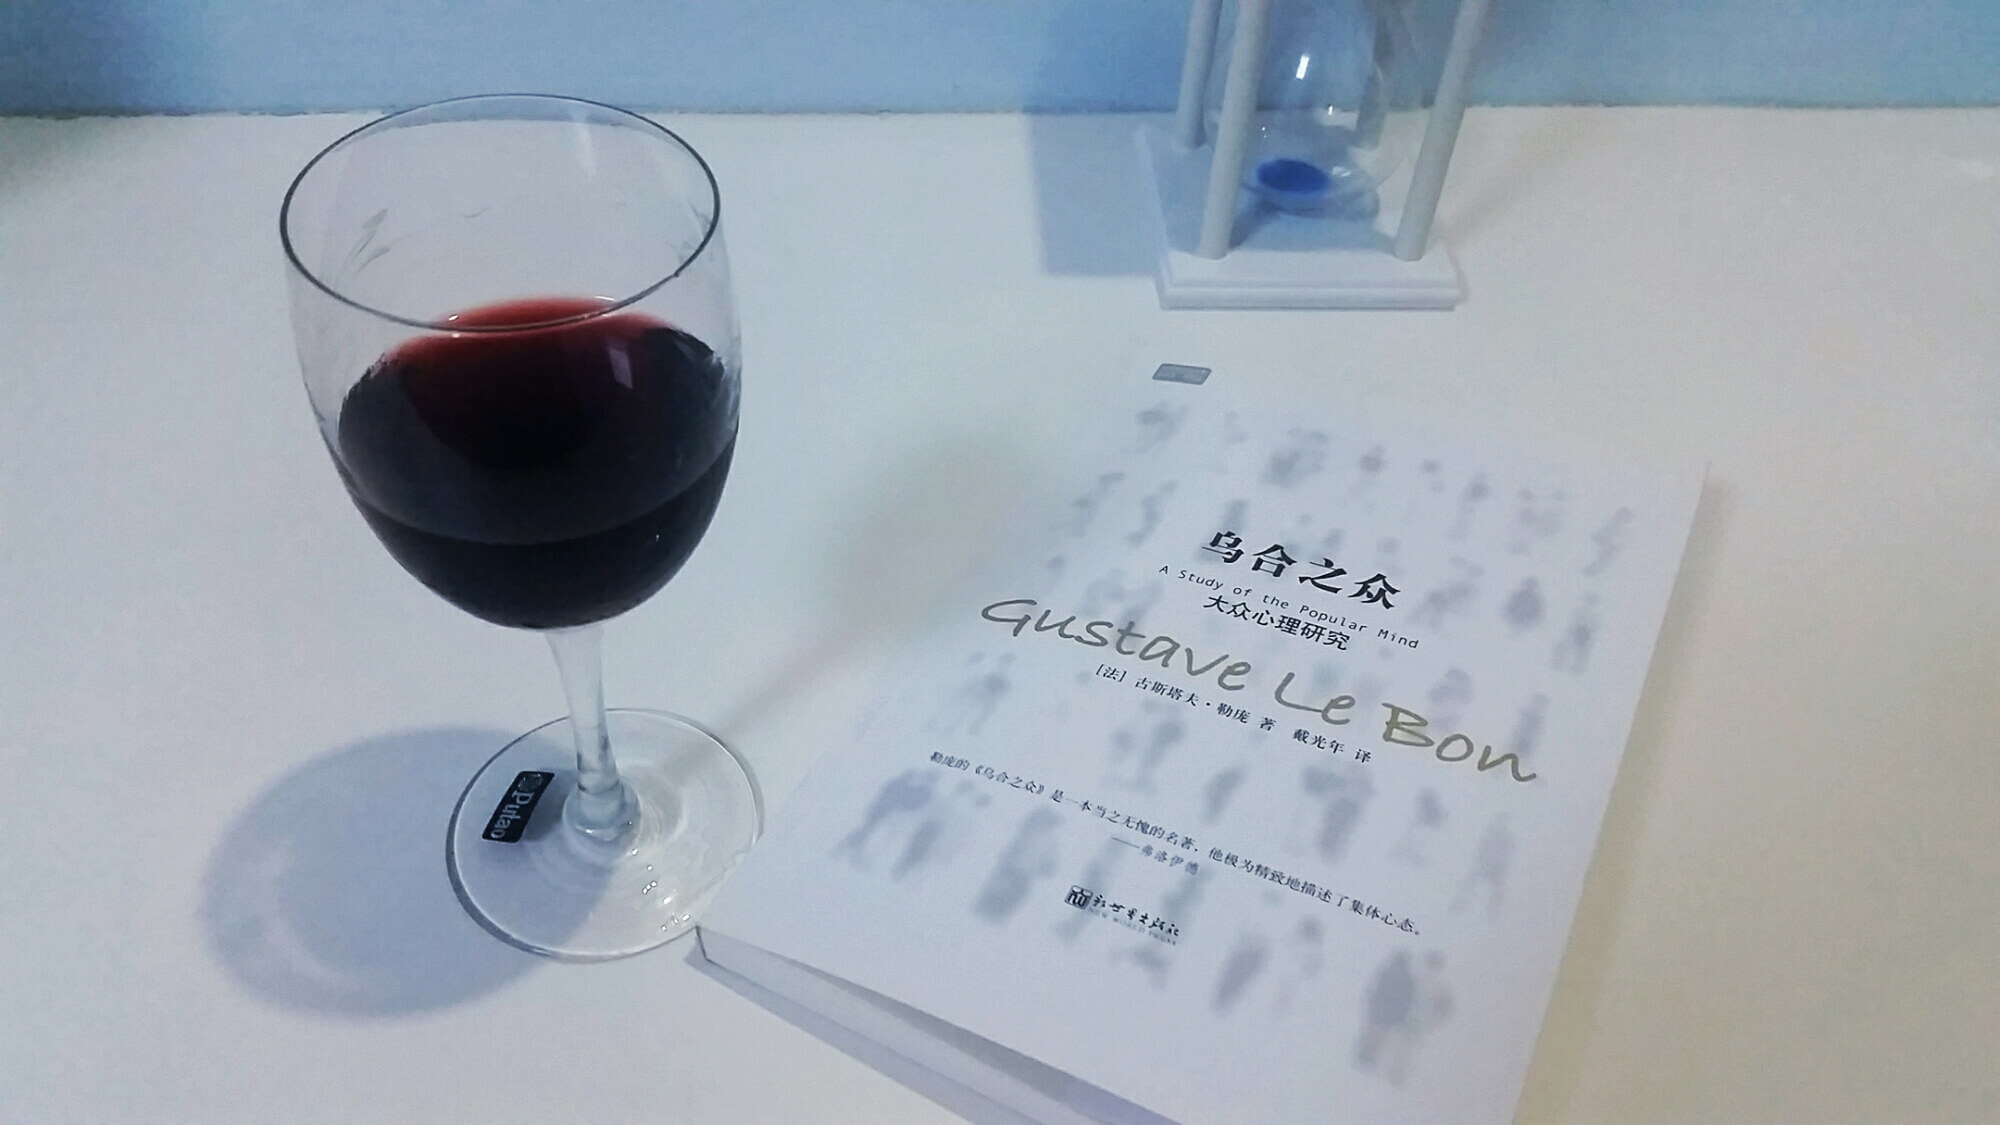 一杯酒,一本书……                        标签:感慨看书红酒